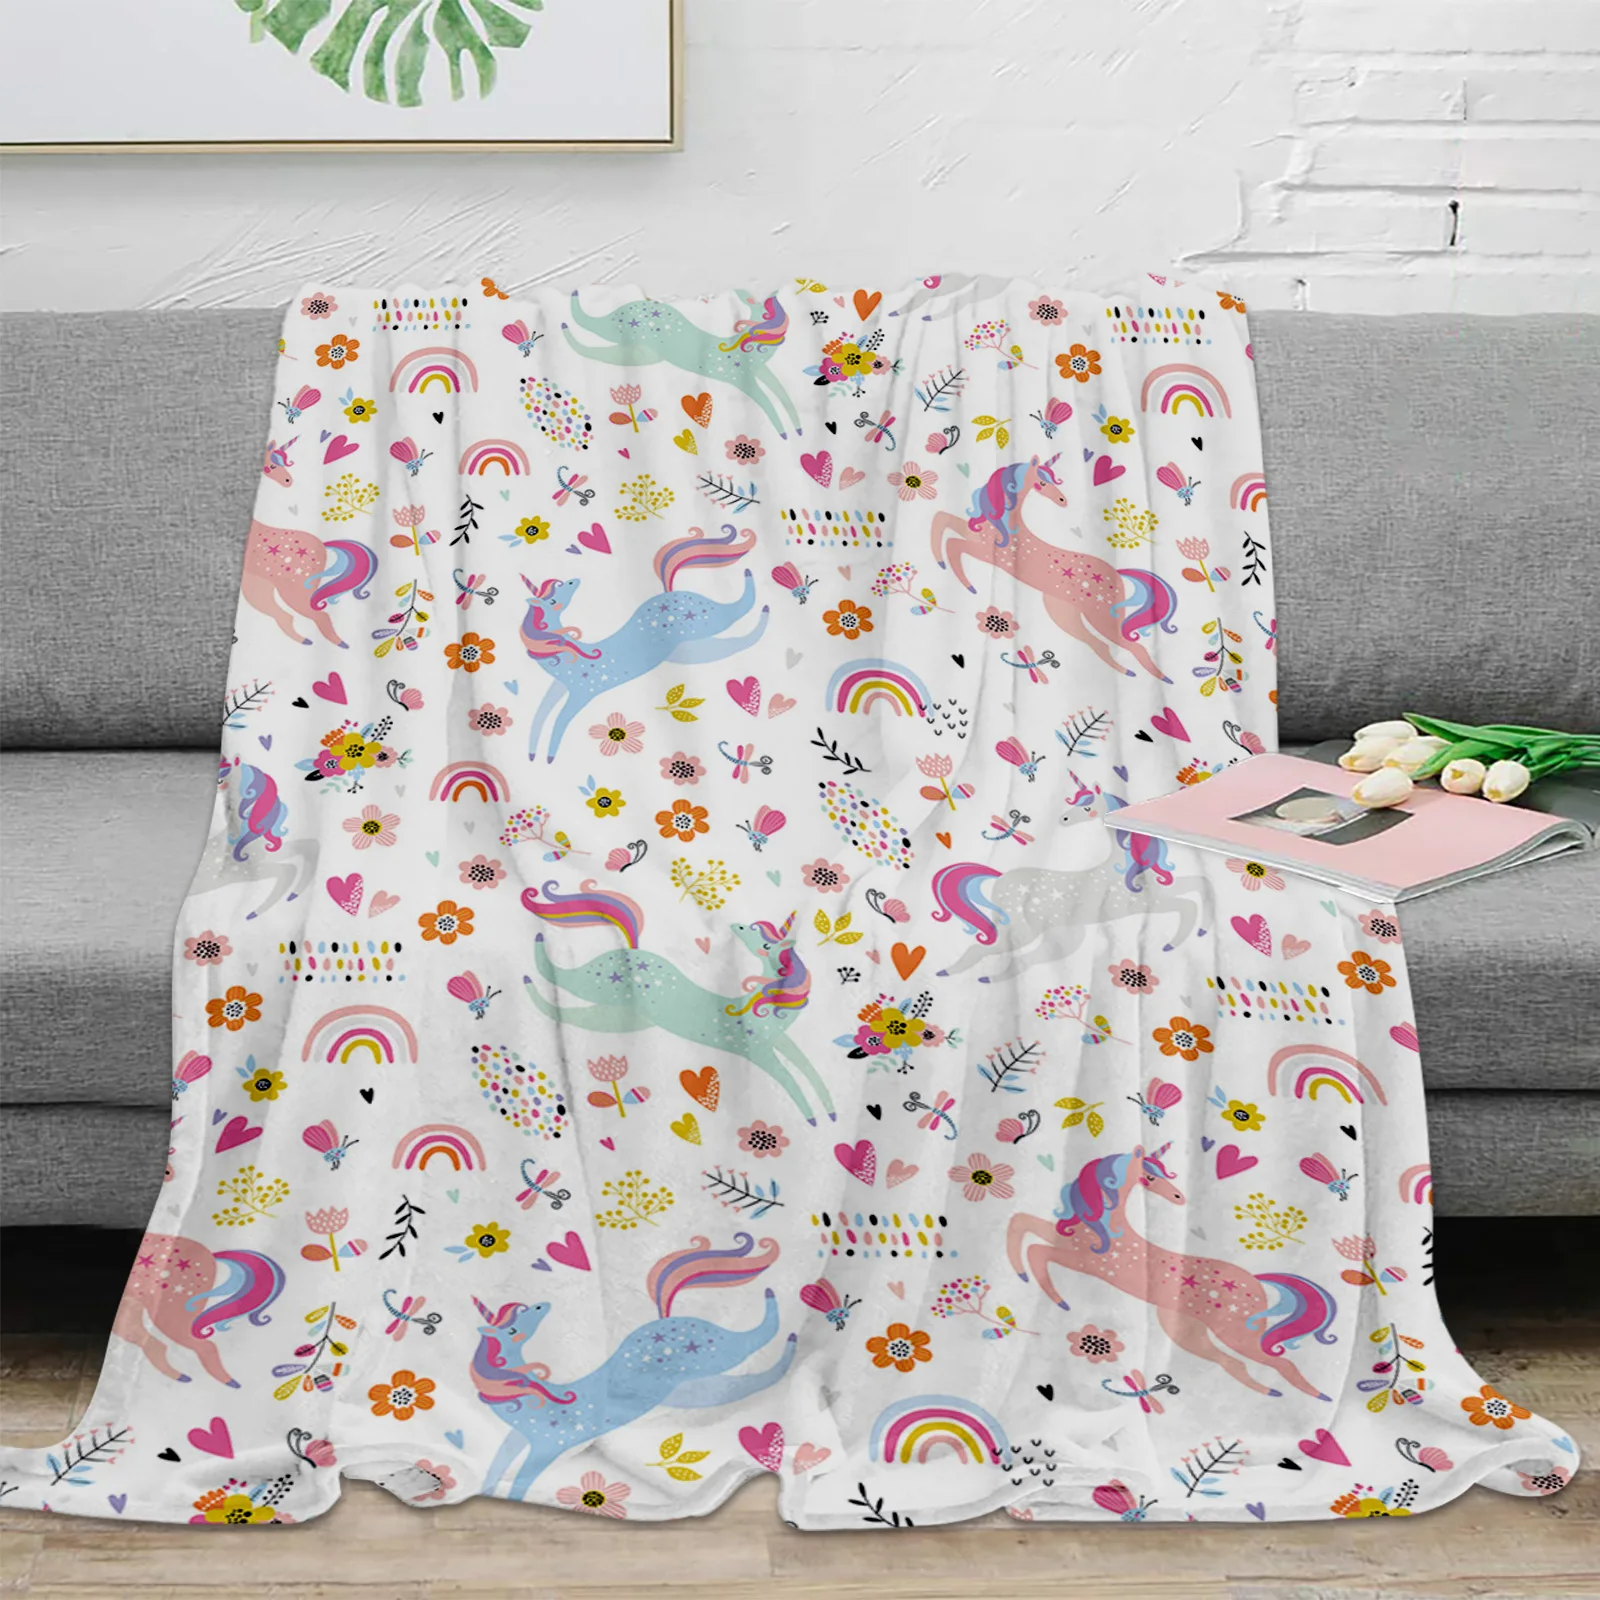 

Плед-одеяло с рисунком розовой лошади, Радужное искусственное одеяло, мягкое удобное плюшевое одеяло, теплые простыни для дивана и кровати